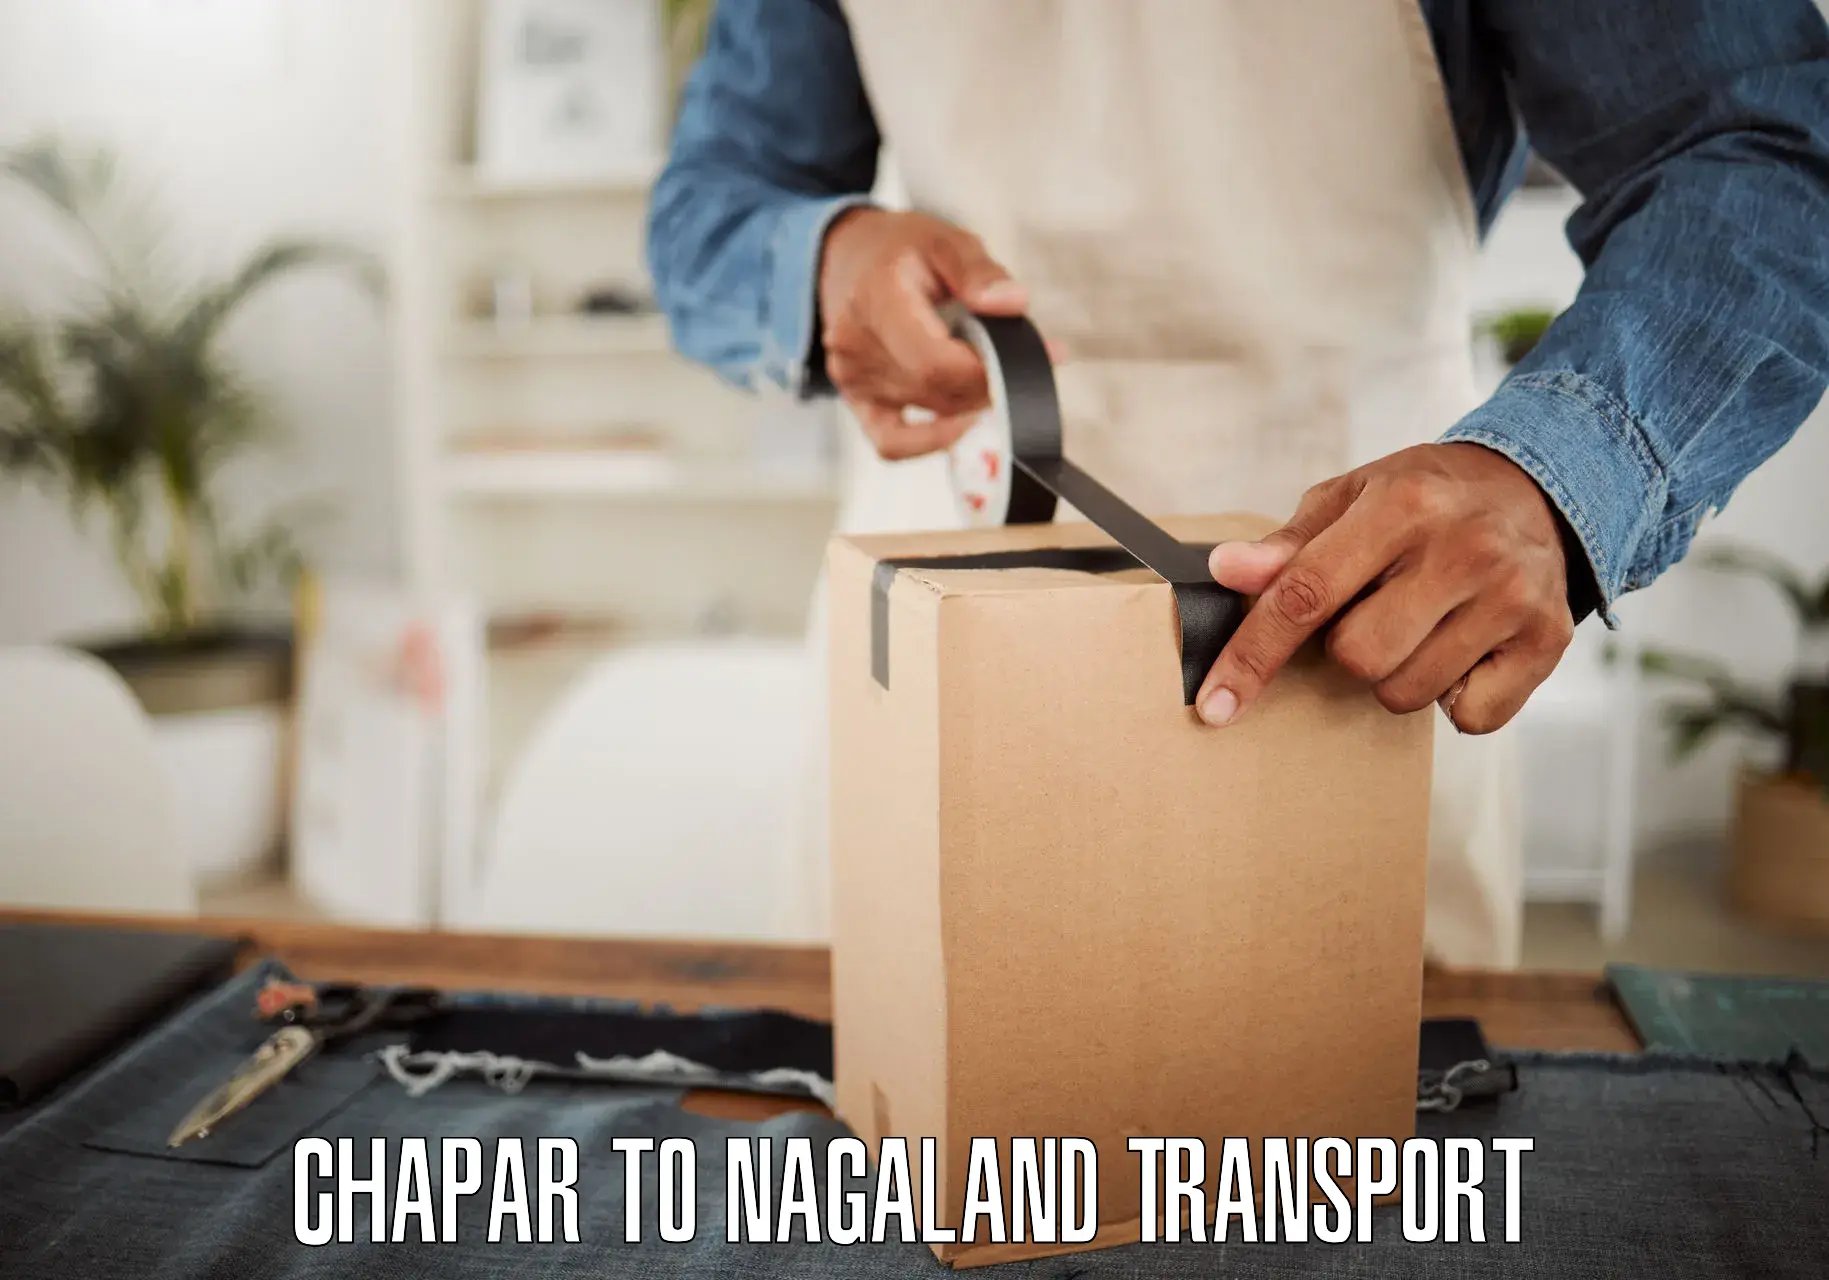 Online transport service Chapar to Longleng